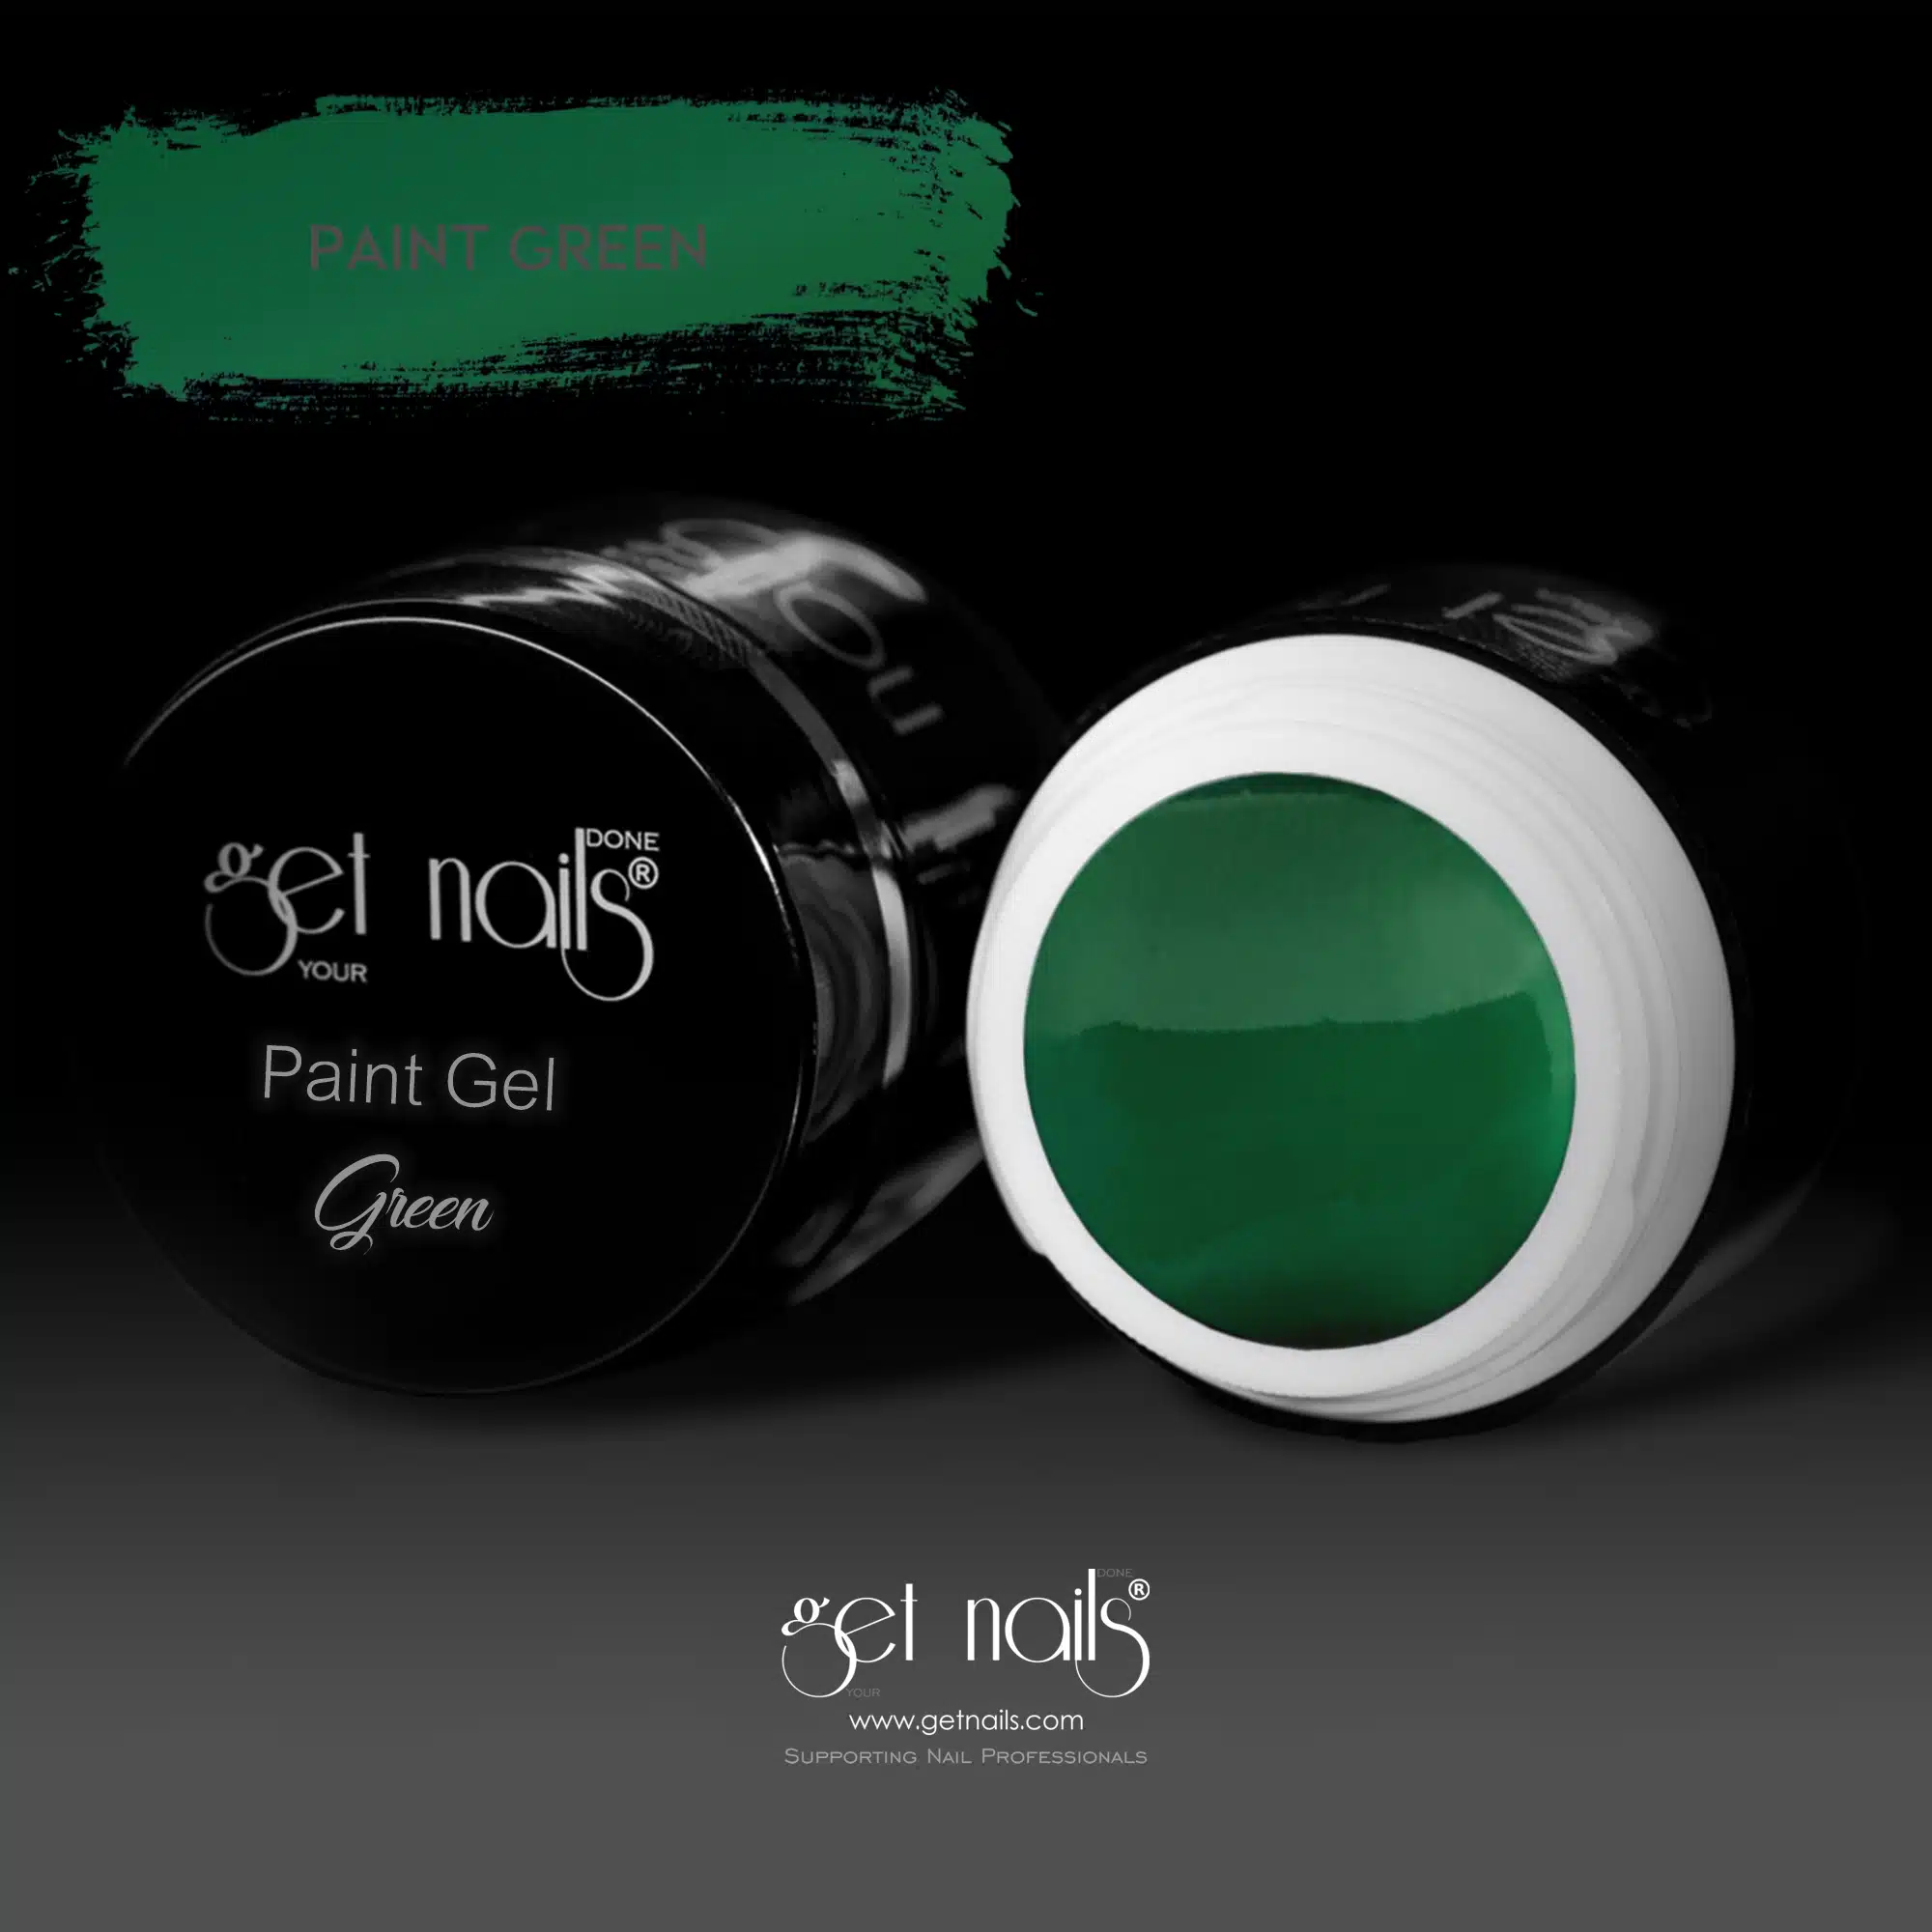 Get Nails Austria - Paint Gel Green 5g